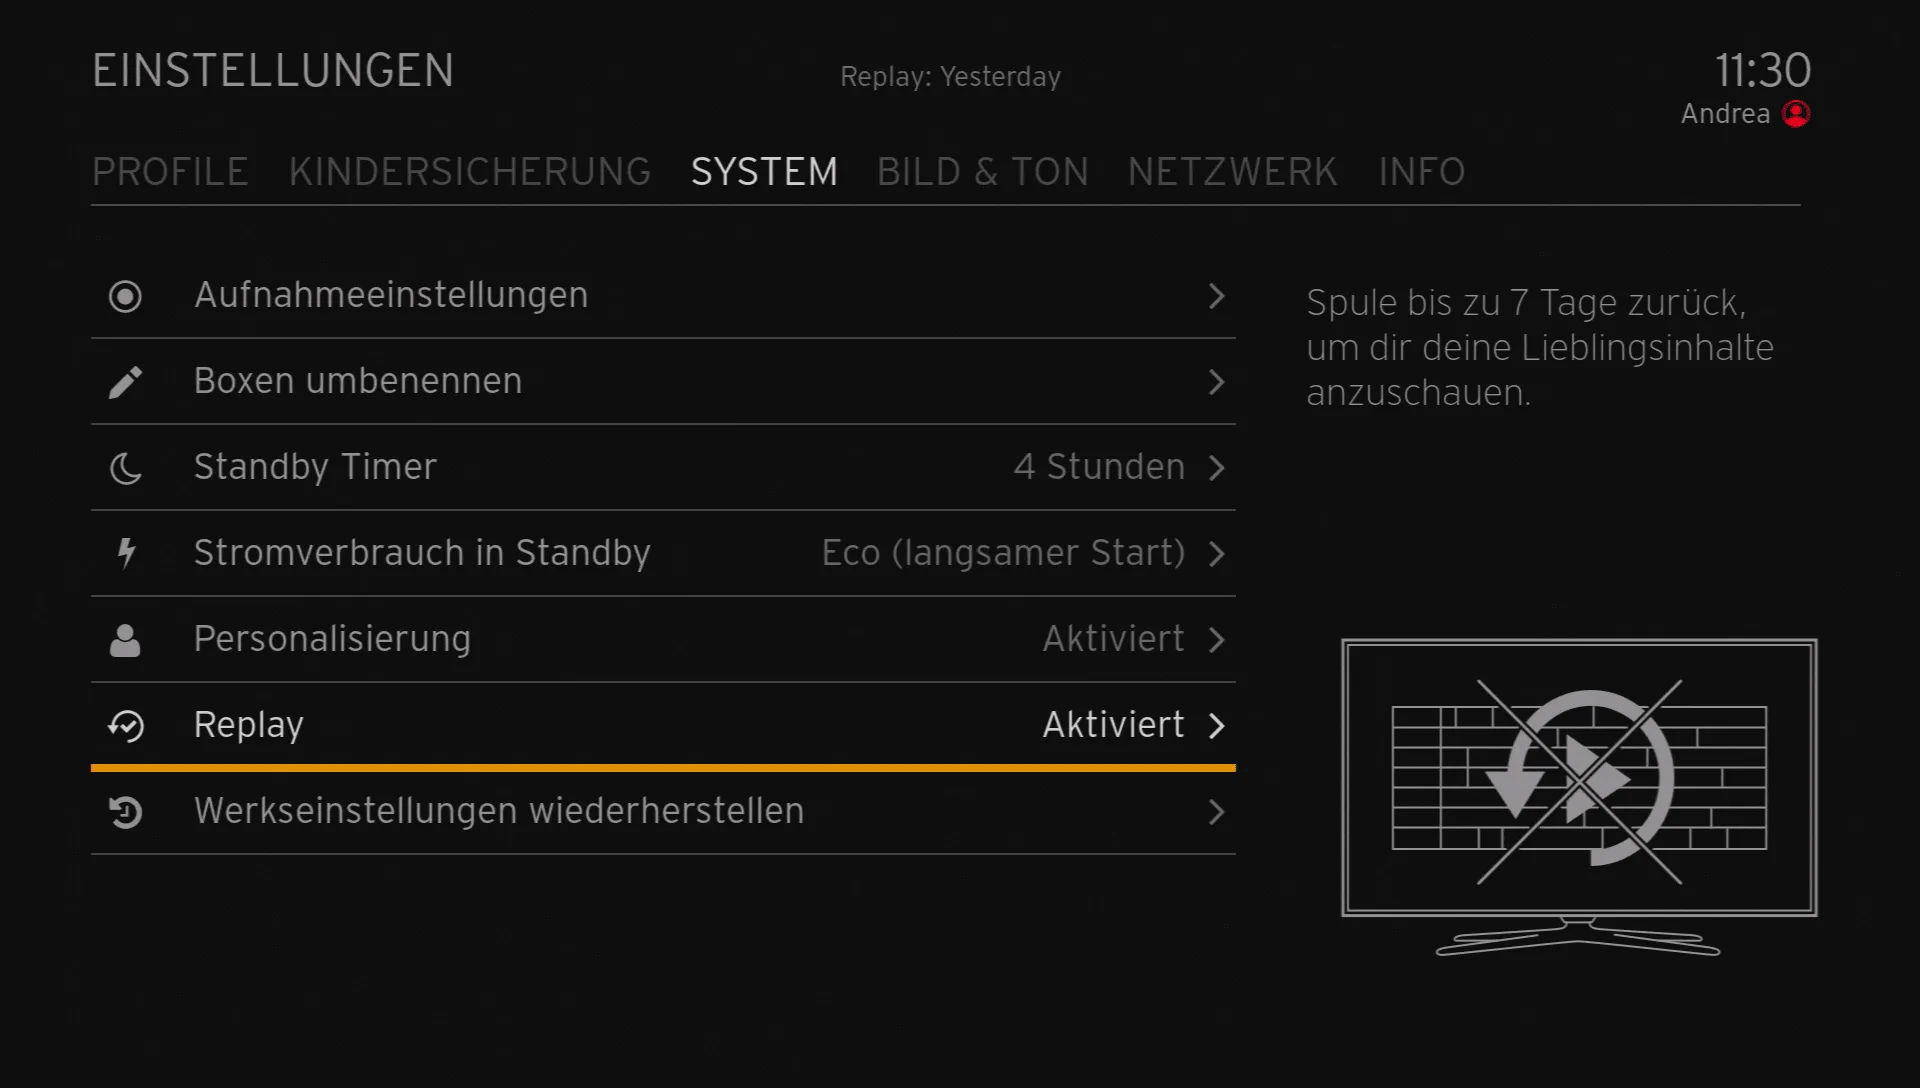 Bildschirm zeigt Menu und "Replay" ist angewählt